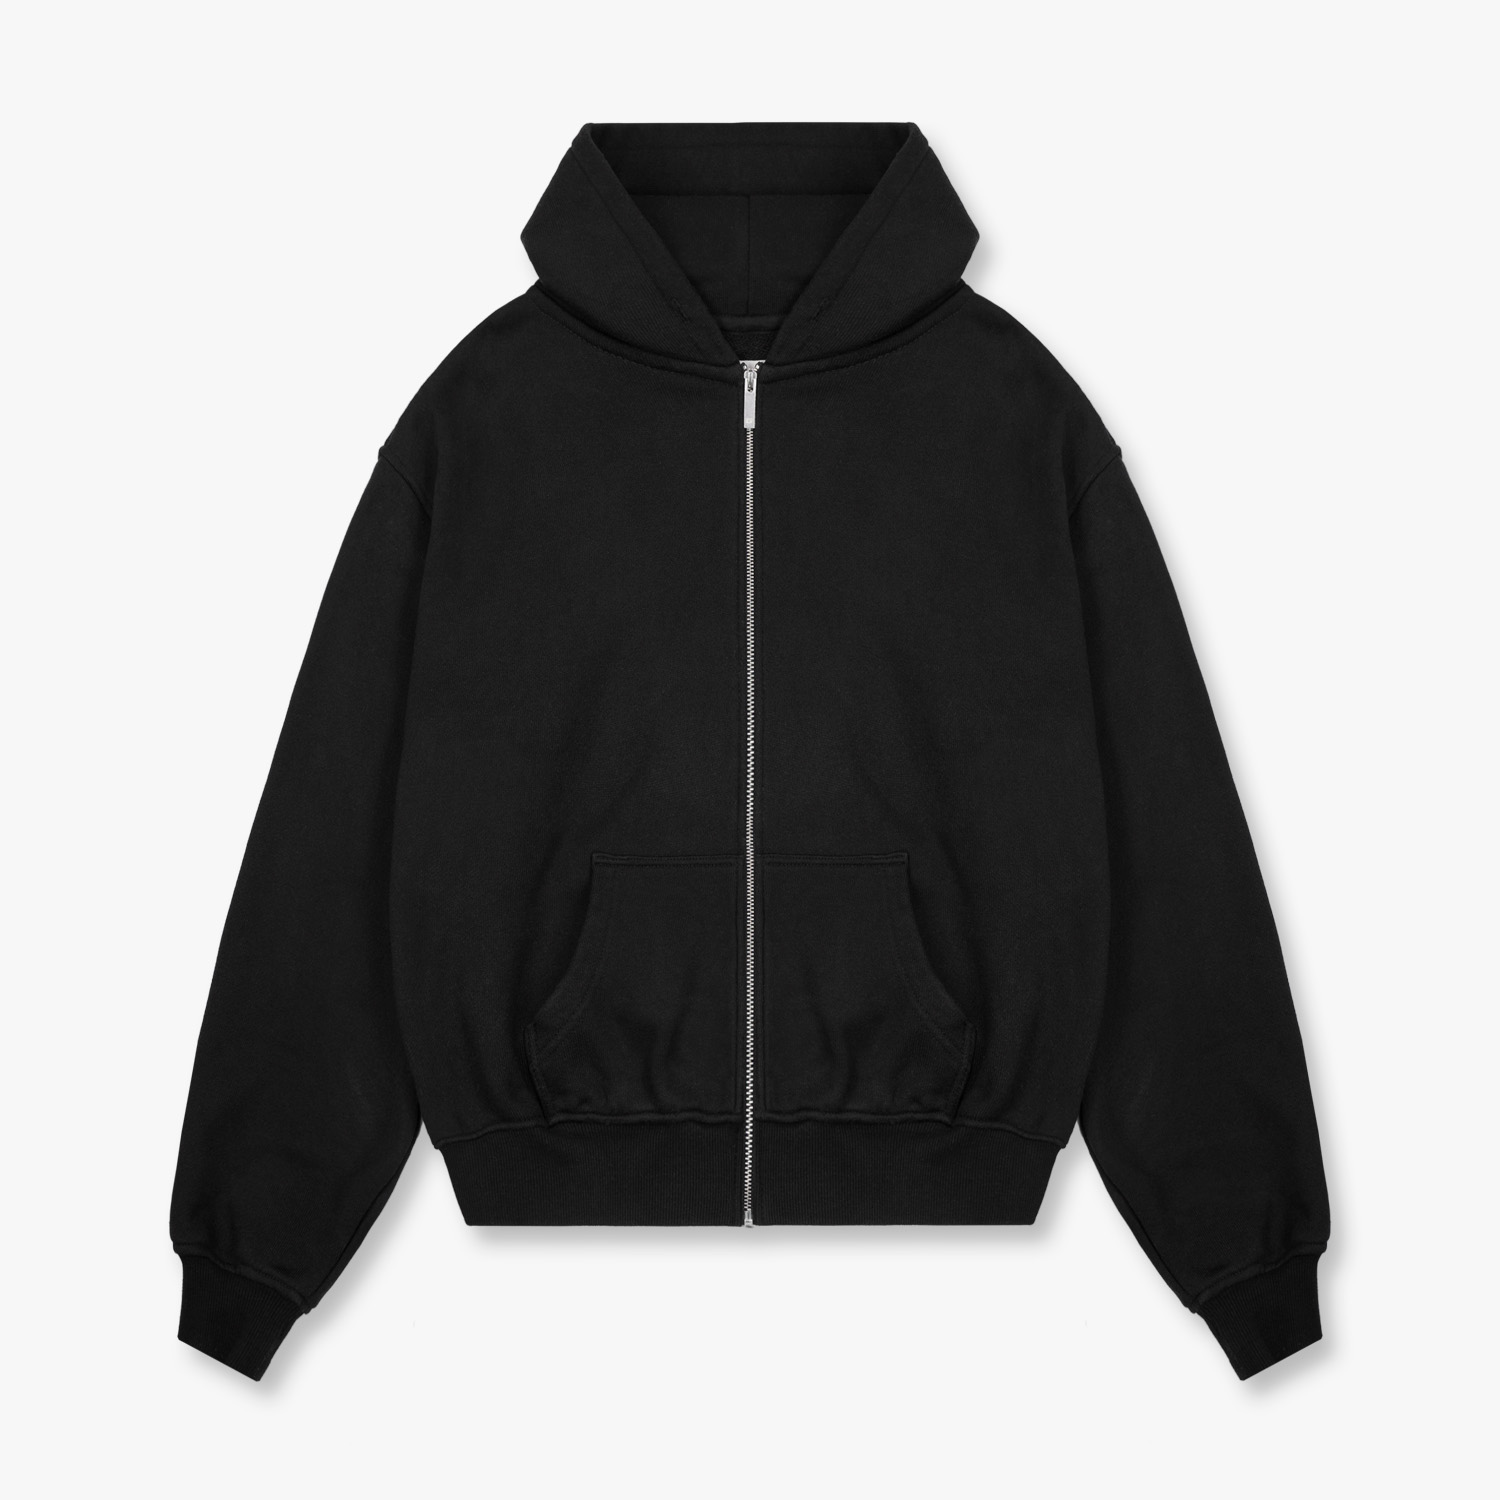 essential_zip-hoodie_black_1500x1500_01_grey